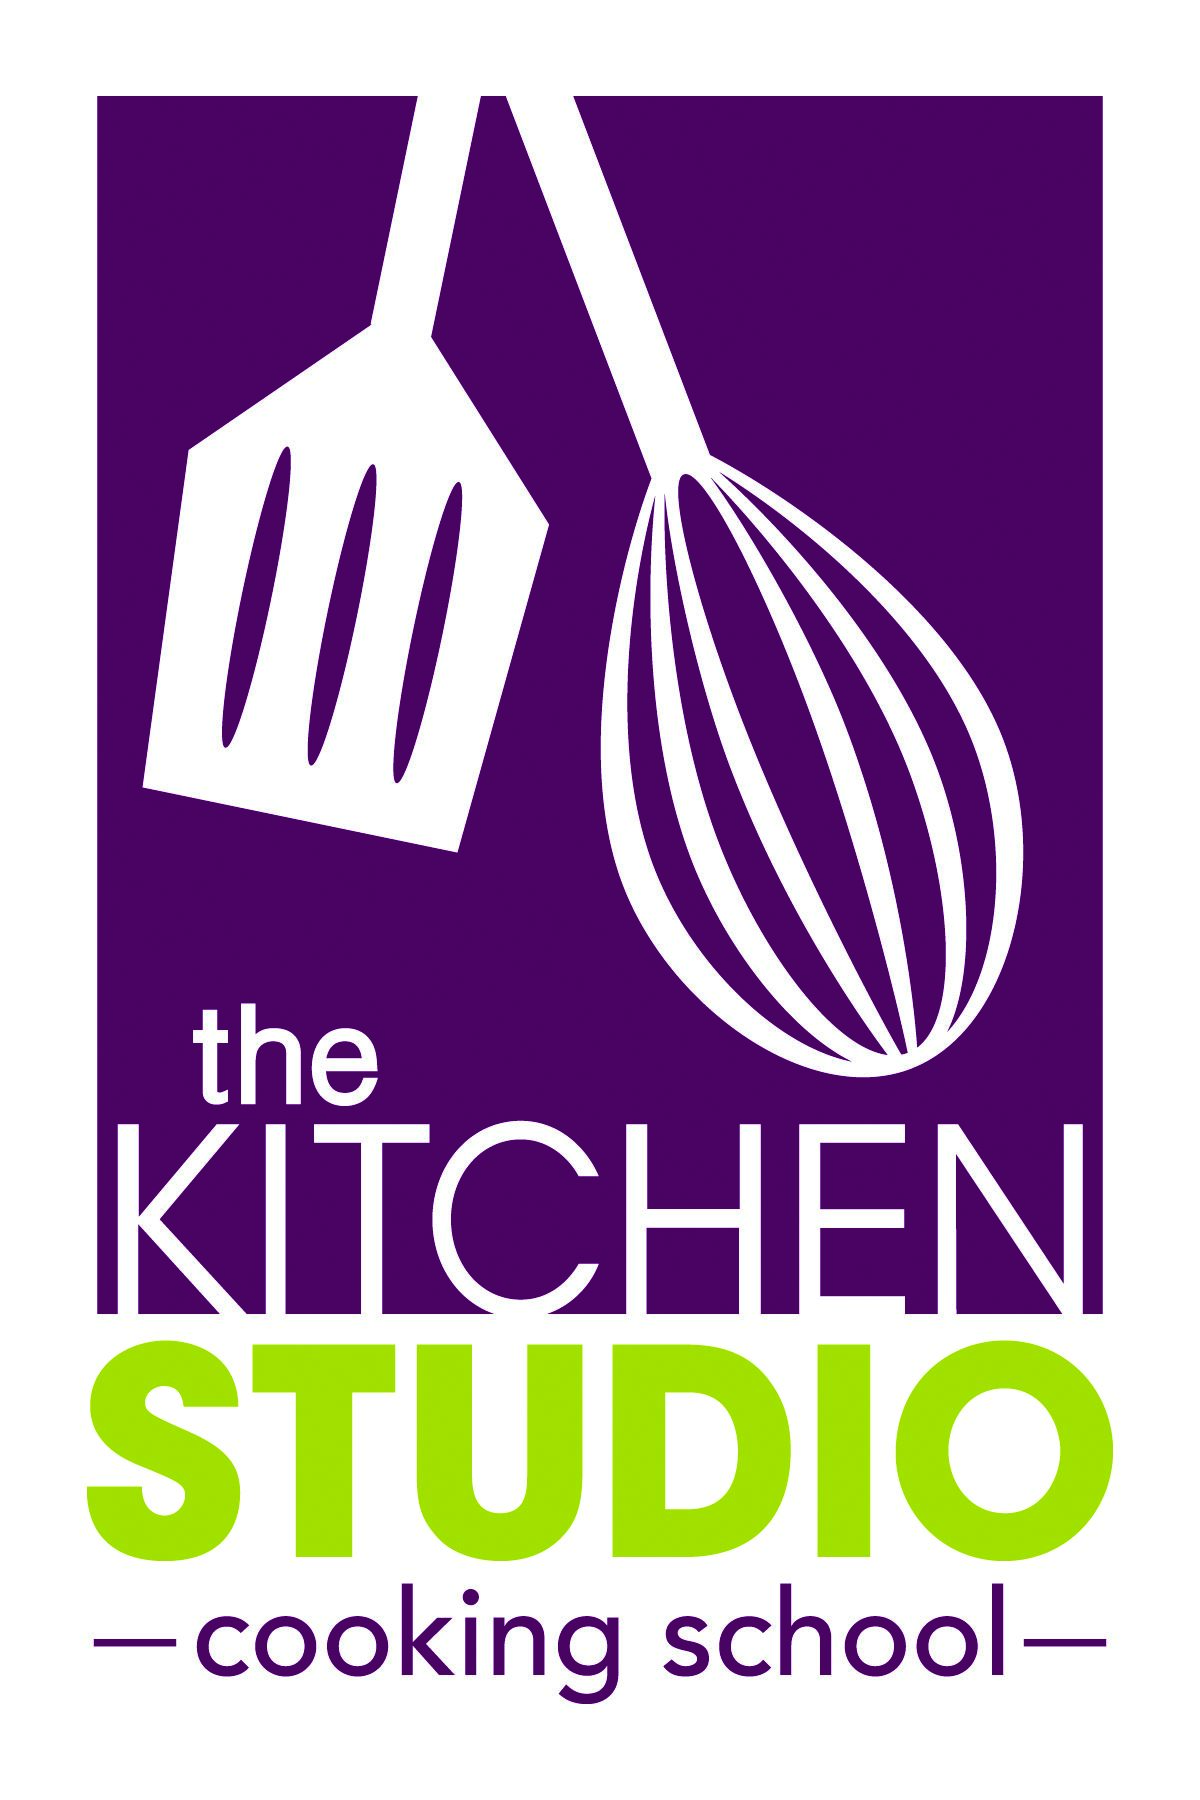 The Kitchen Studio logo